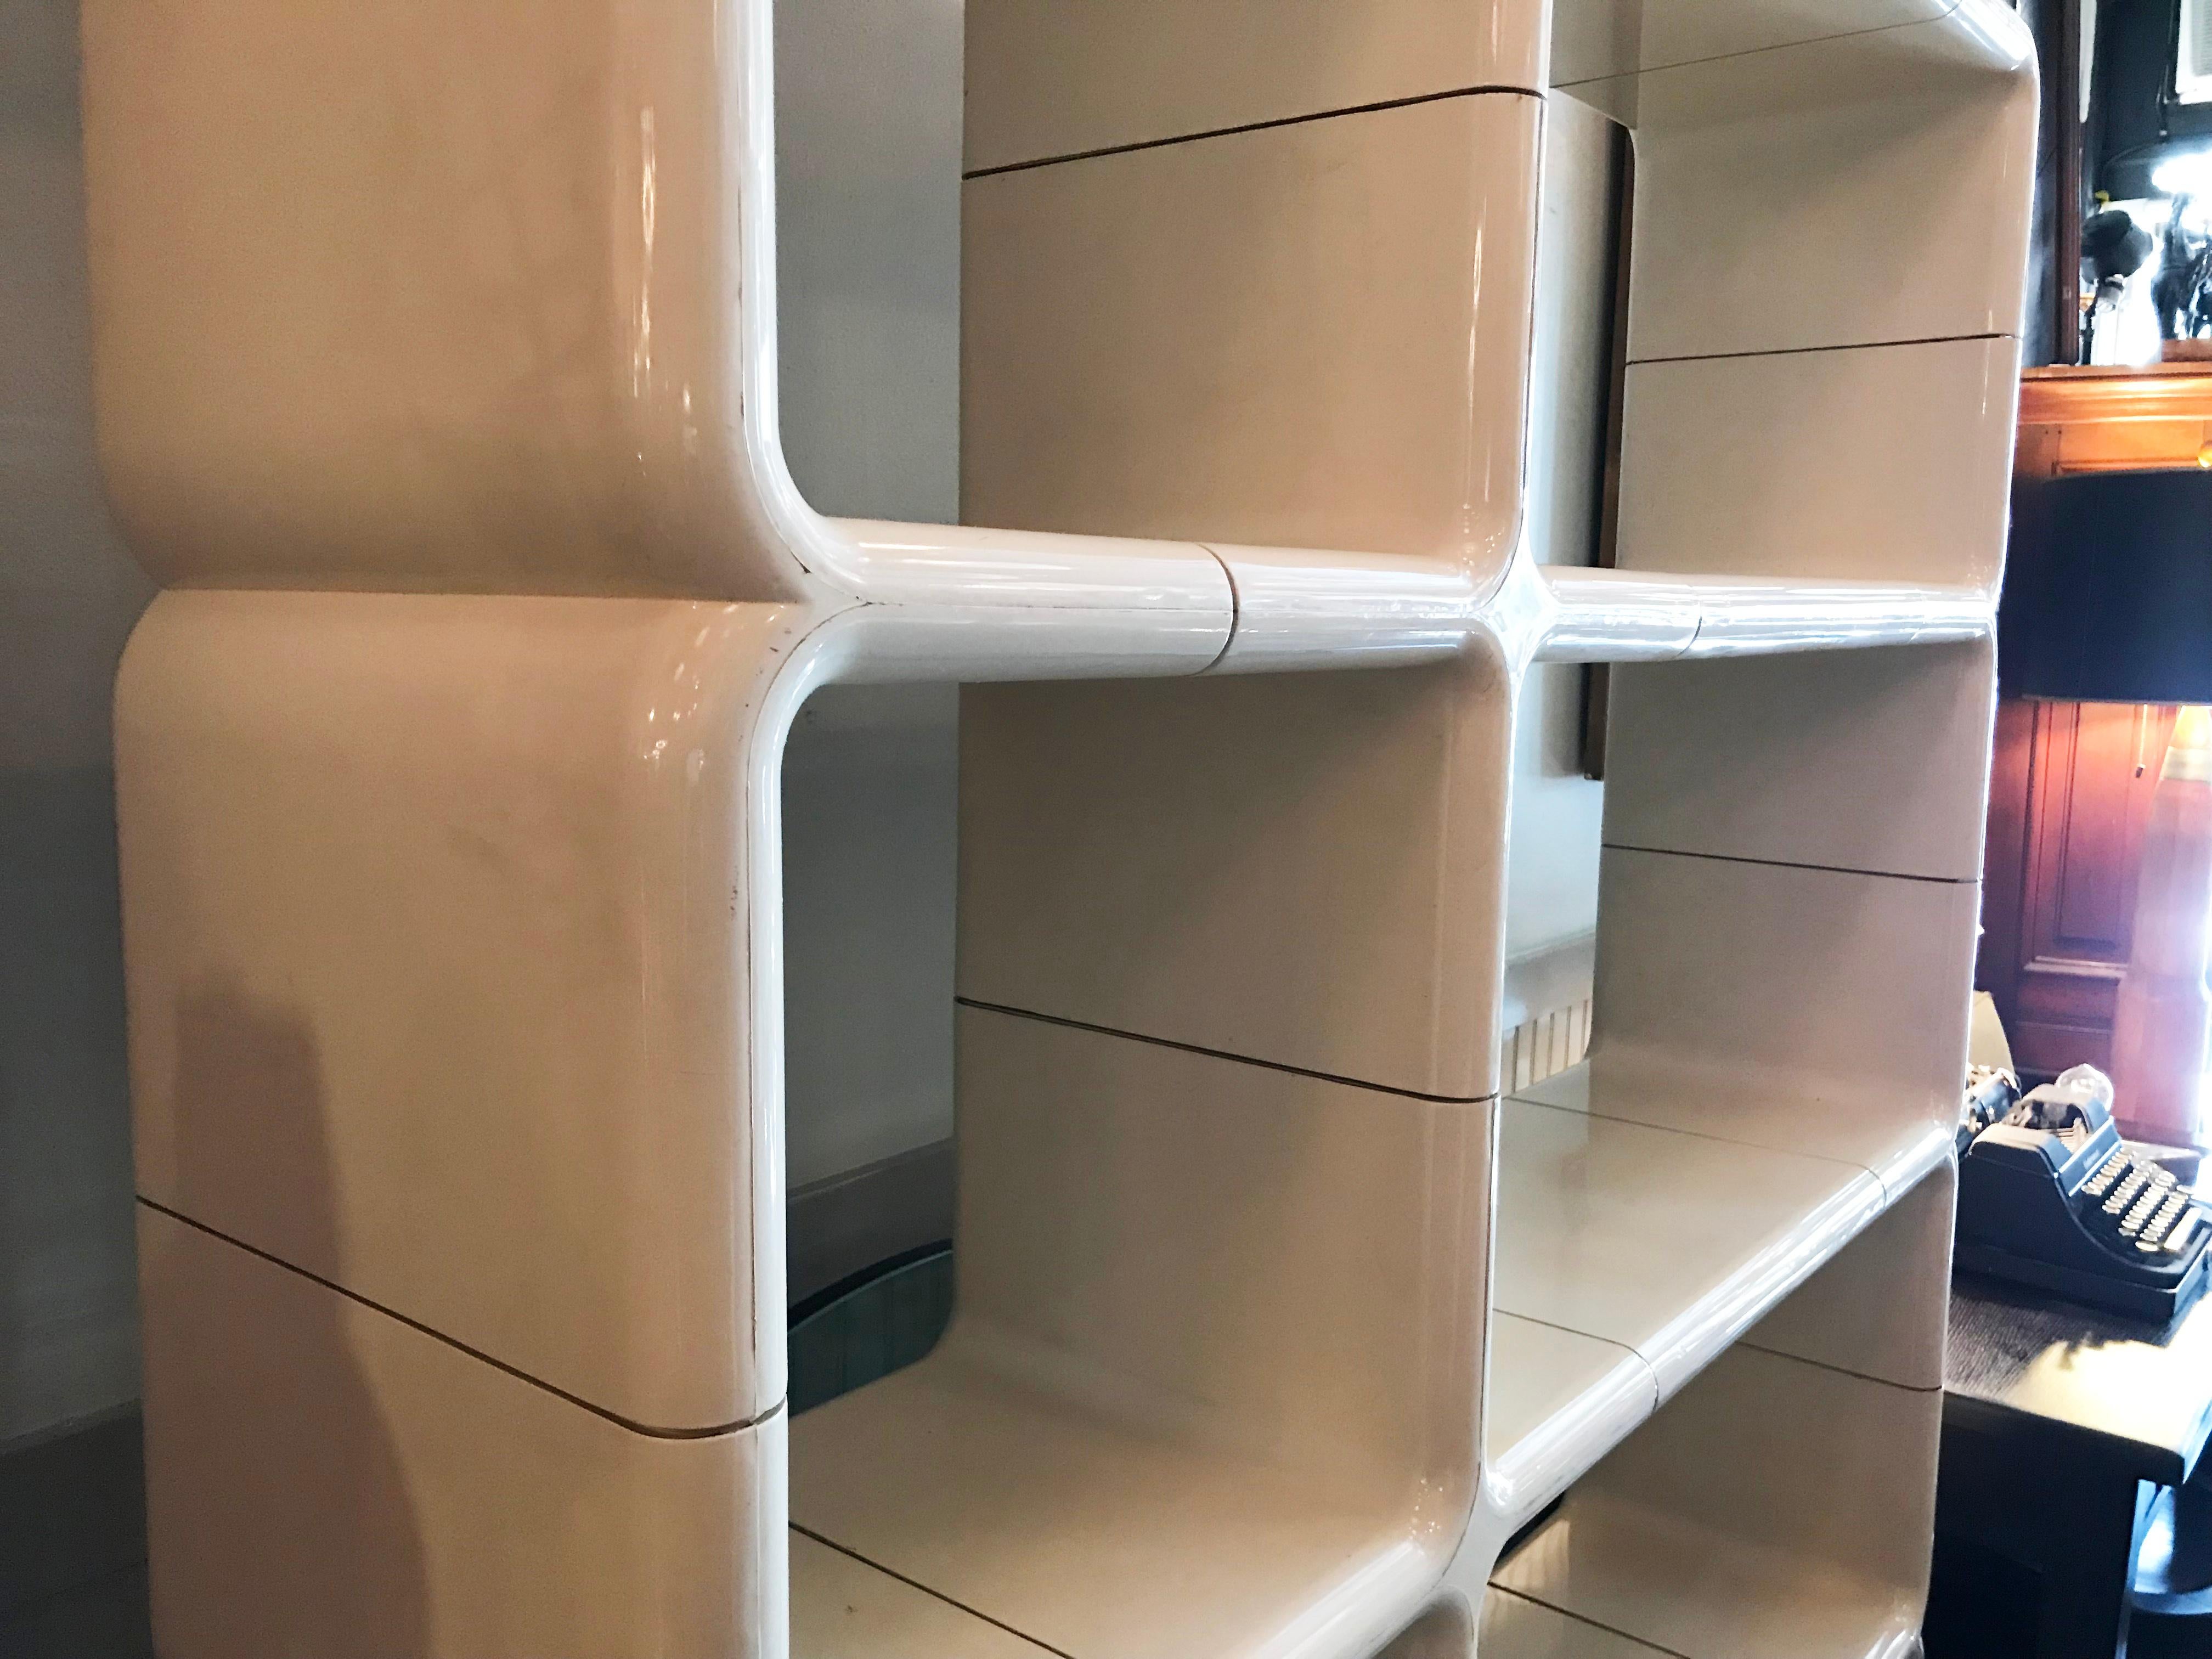 20th Century Kay Leroy Ruggles Modular Umbo Shelf Unit Bookcase